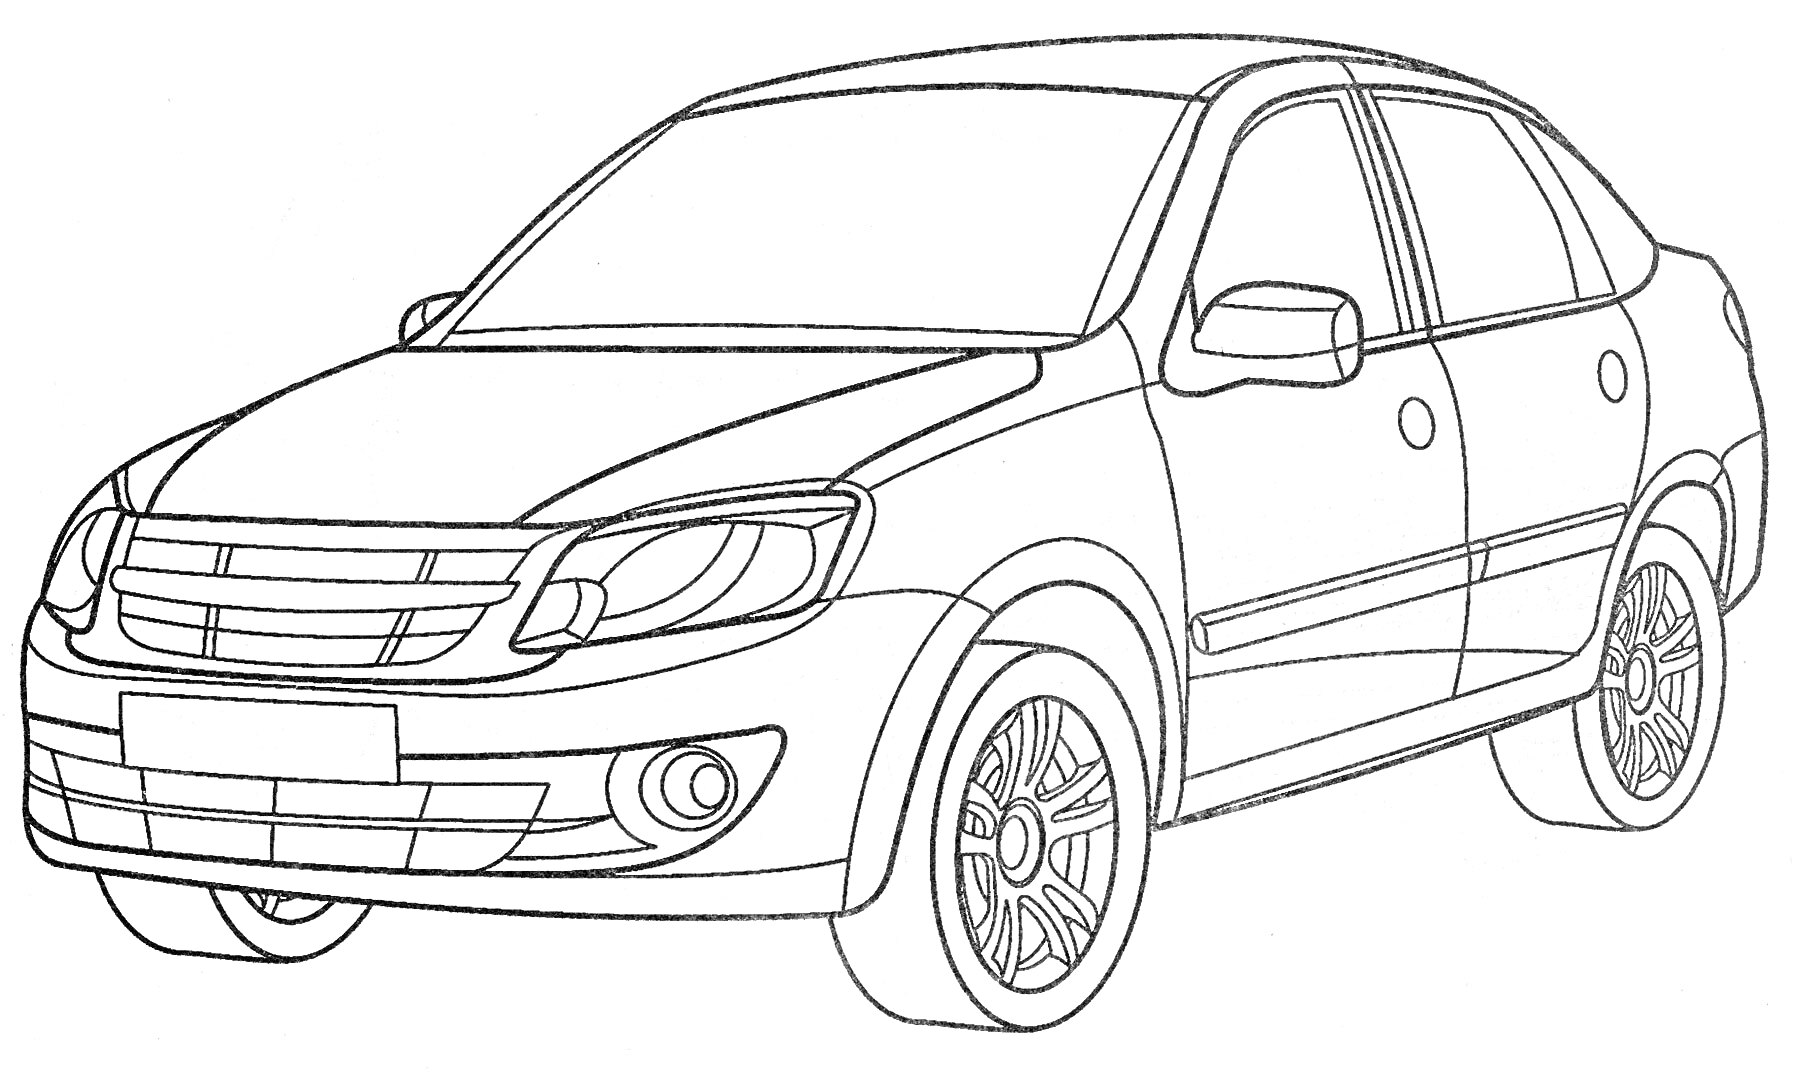 Раскраска Лада - легковой автомобиль с характерными колесами, бамперами и фарами, боковые зеркала и дверные ручки